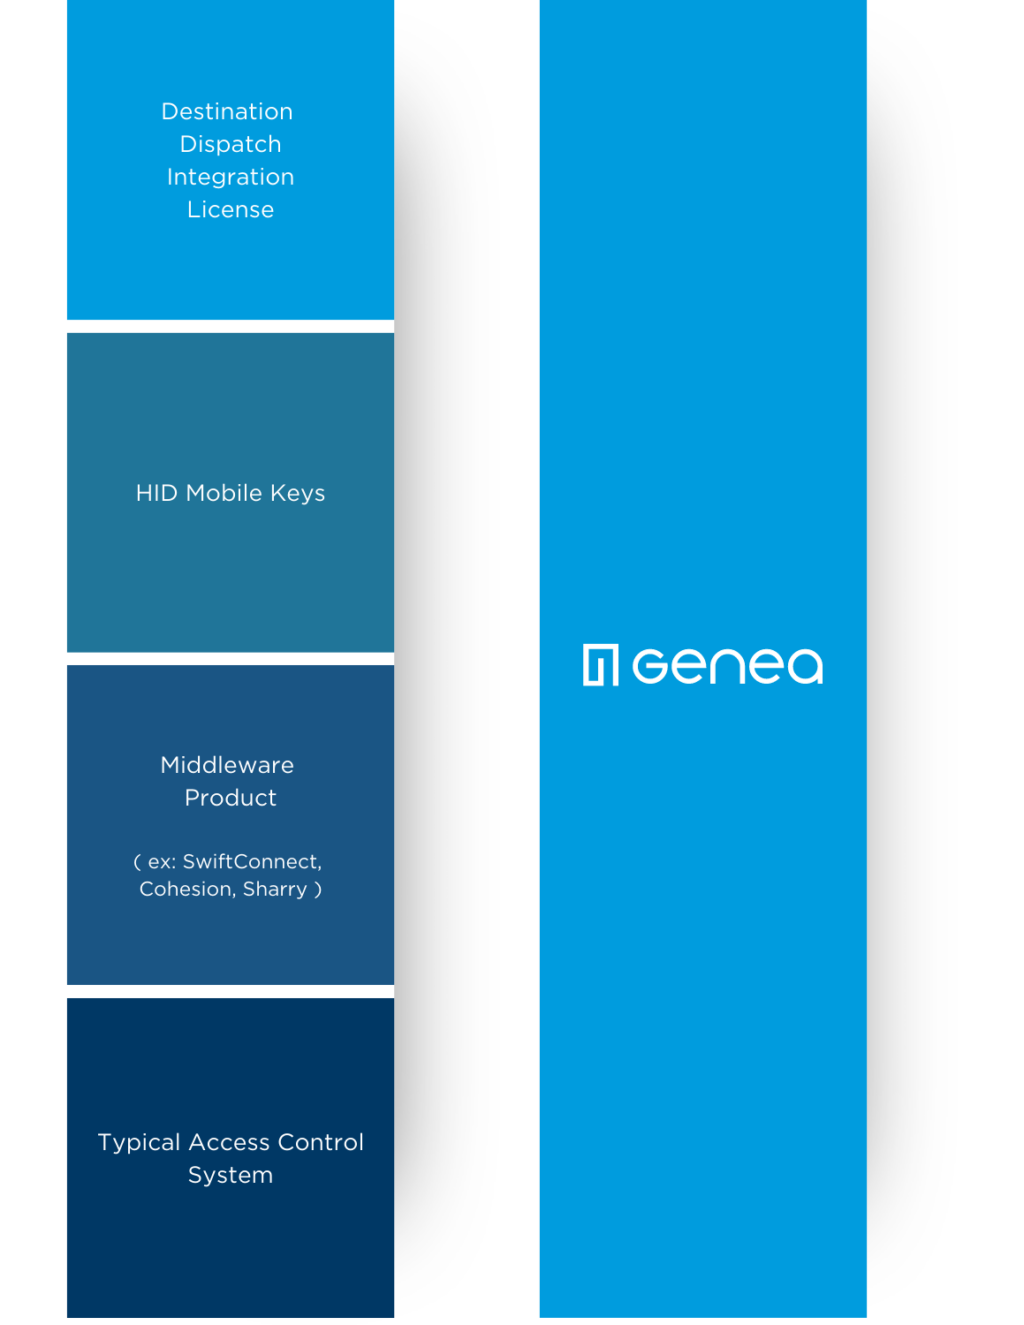 Genea middleware comparison chart graphic